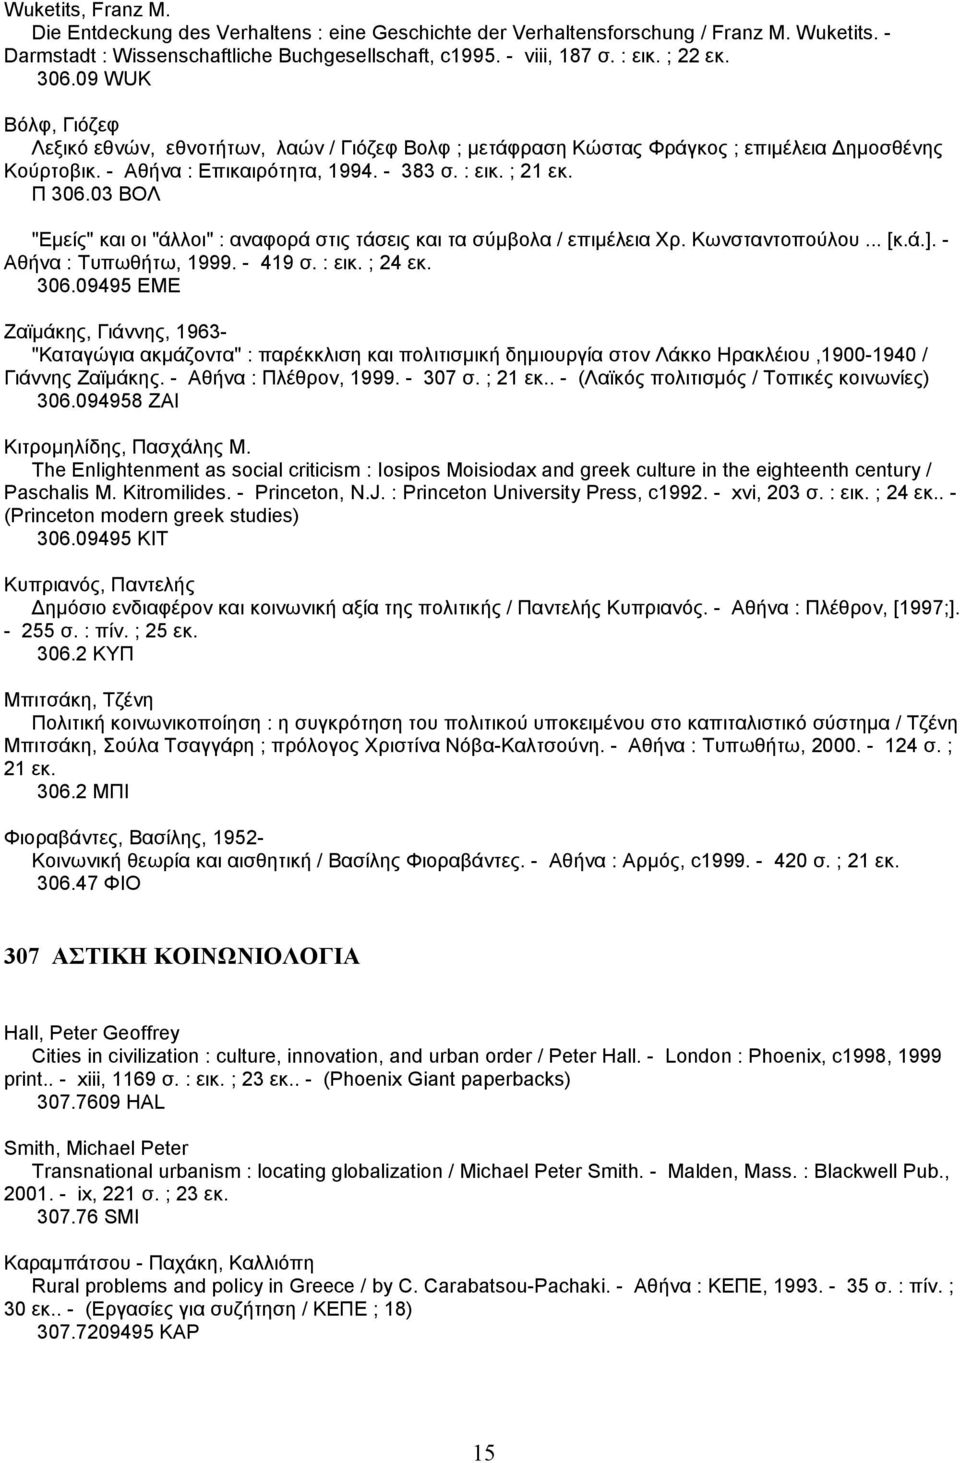 03 ΒΟΛ "Εµείς" και οι "άλλοι" : αναφορά στις τάσεις και τα σύµβολα / επιµέλεια Χρ. Κωνσταντοπούλου... [κ.ά.]. - Αθήνα : Τυπωθήτω, 1999. - 419 σ. : εικ. ; 24 εκ. 306.